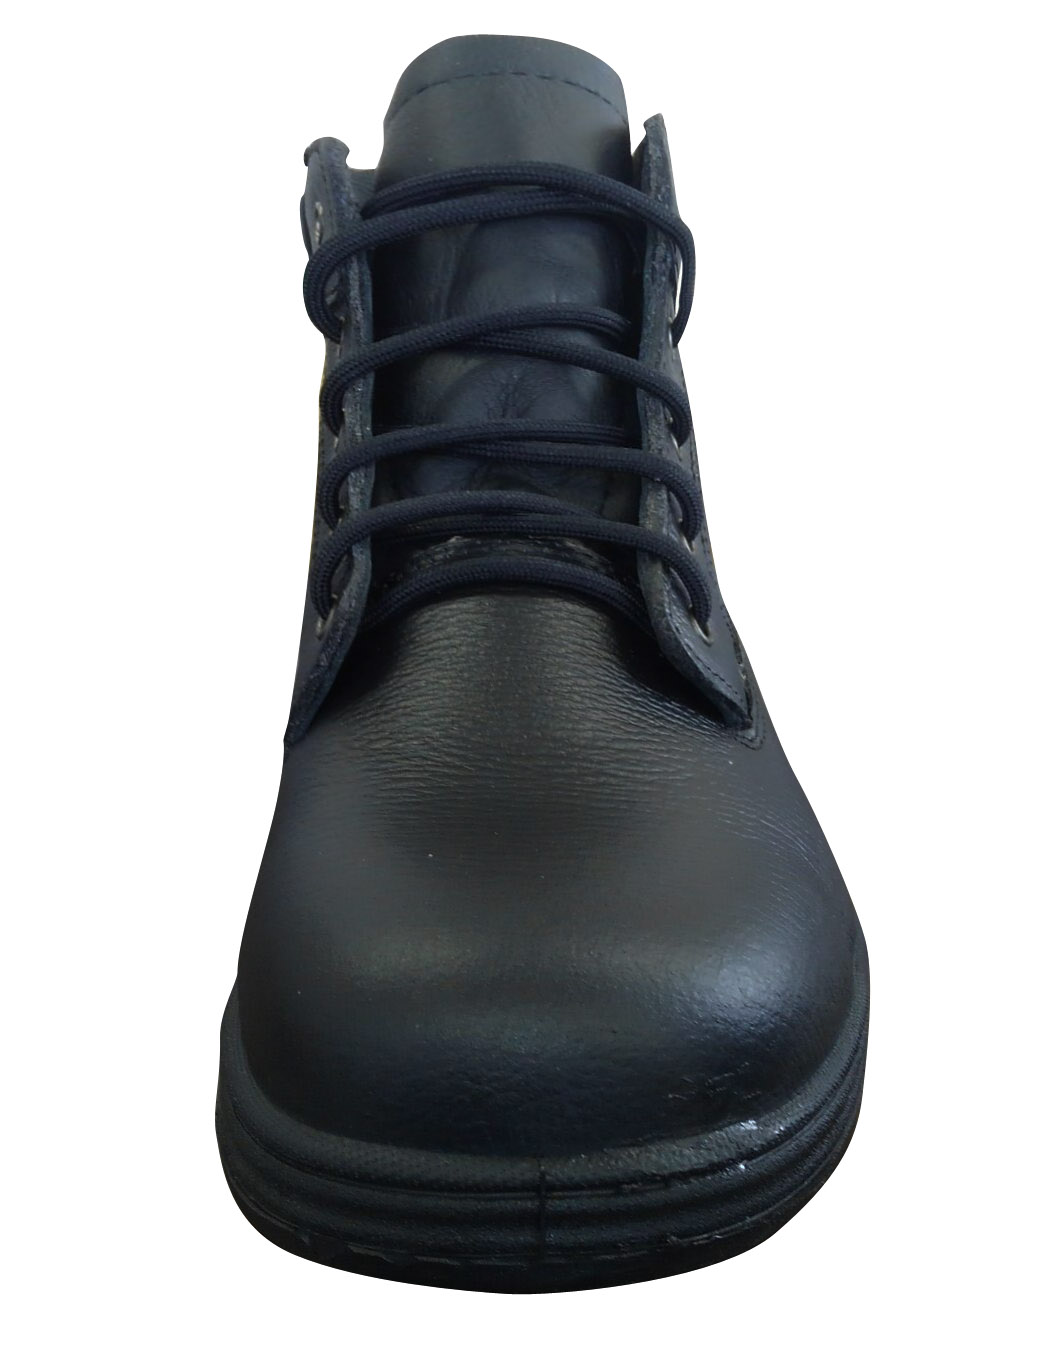 ハイセンスな安全靴ならWORK×2 (ワクワク) / 安全靴 JIS規格認定安全靴 